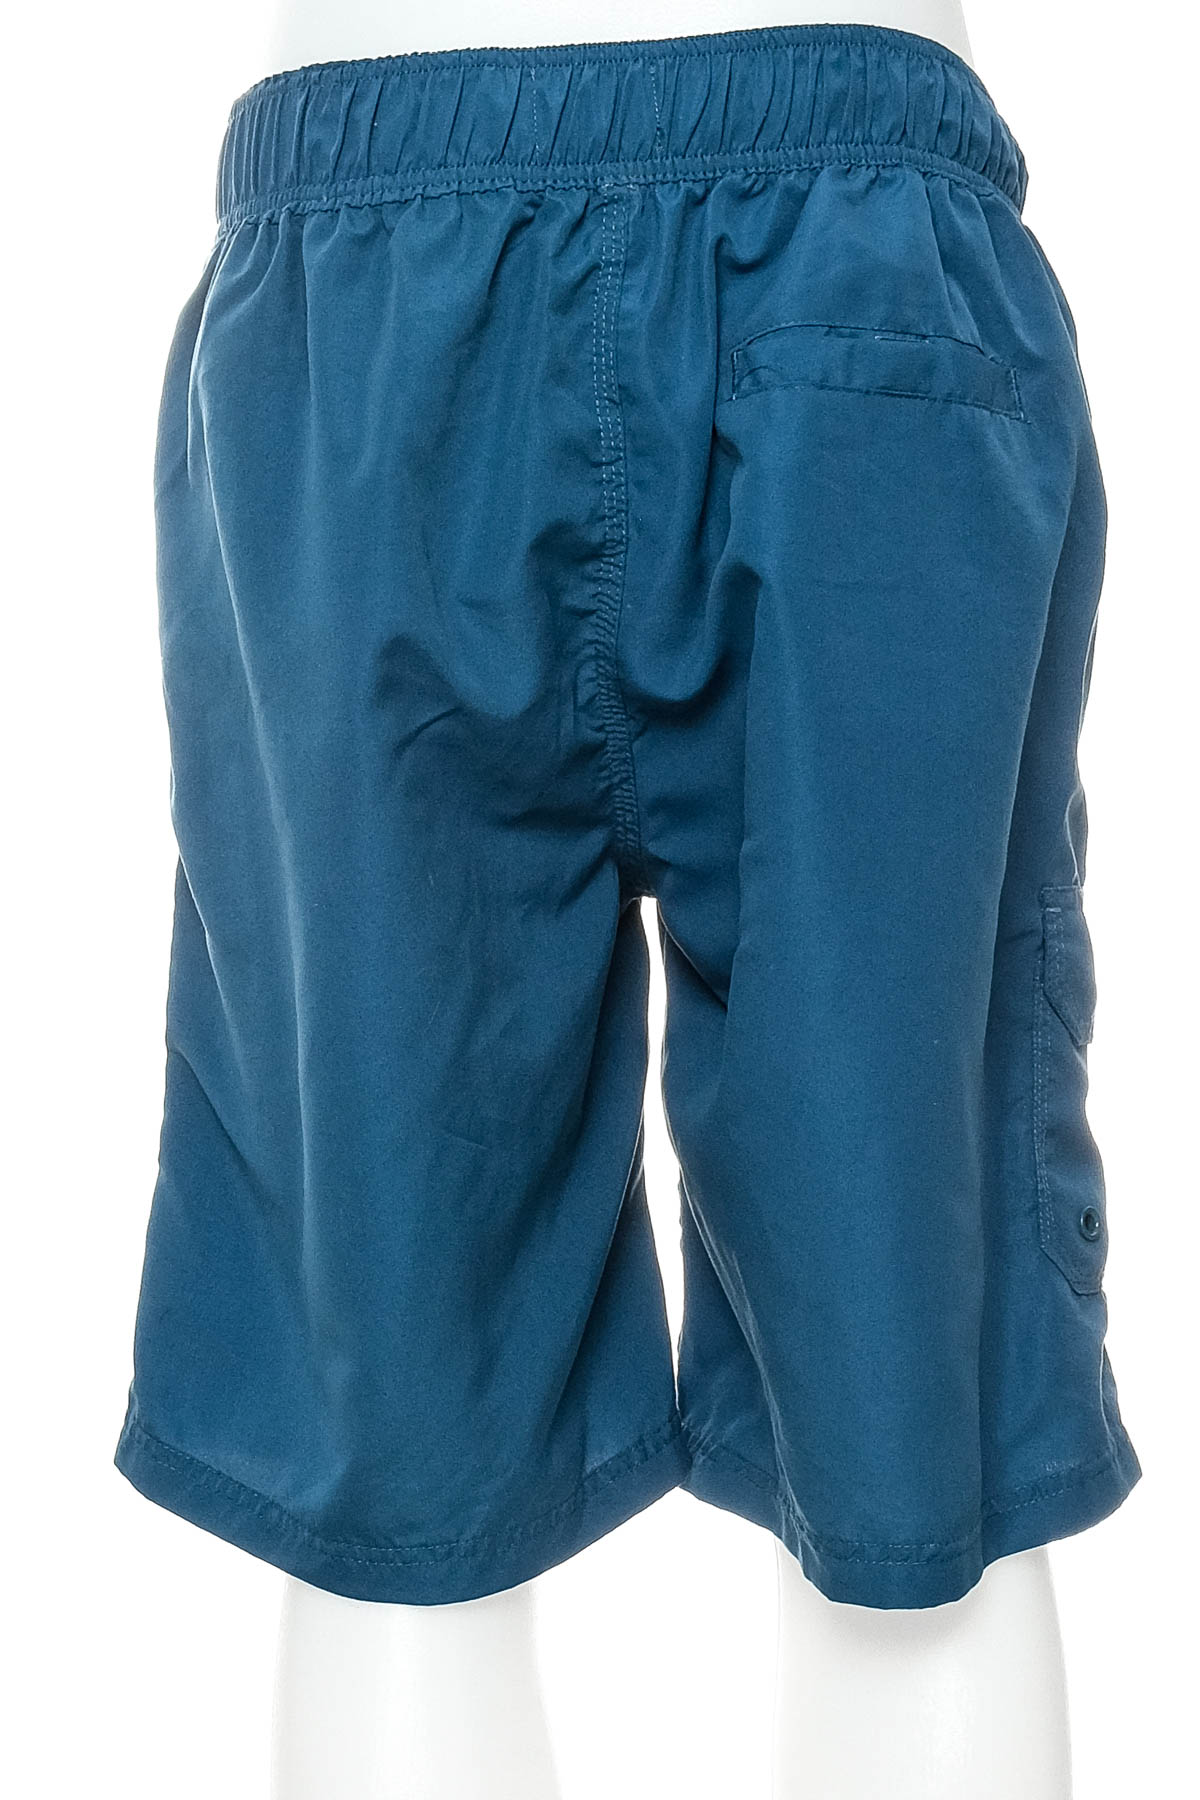 Pantaloni scurți bărbați - Jean Pascale - 1